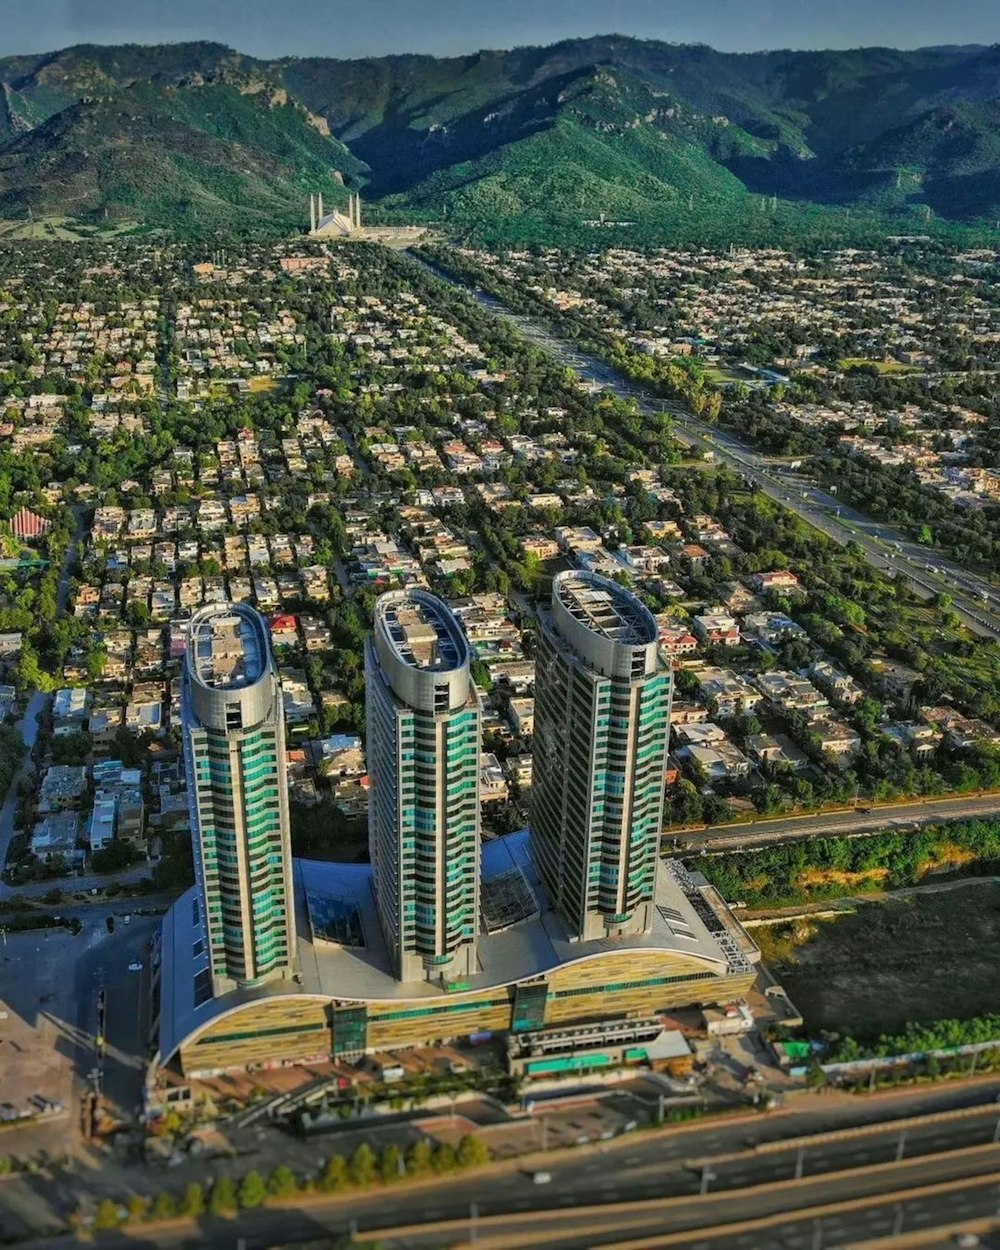 une vue aérienne d’une ville avec des montagnes en arrière-plan